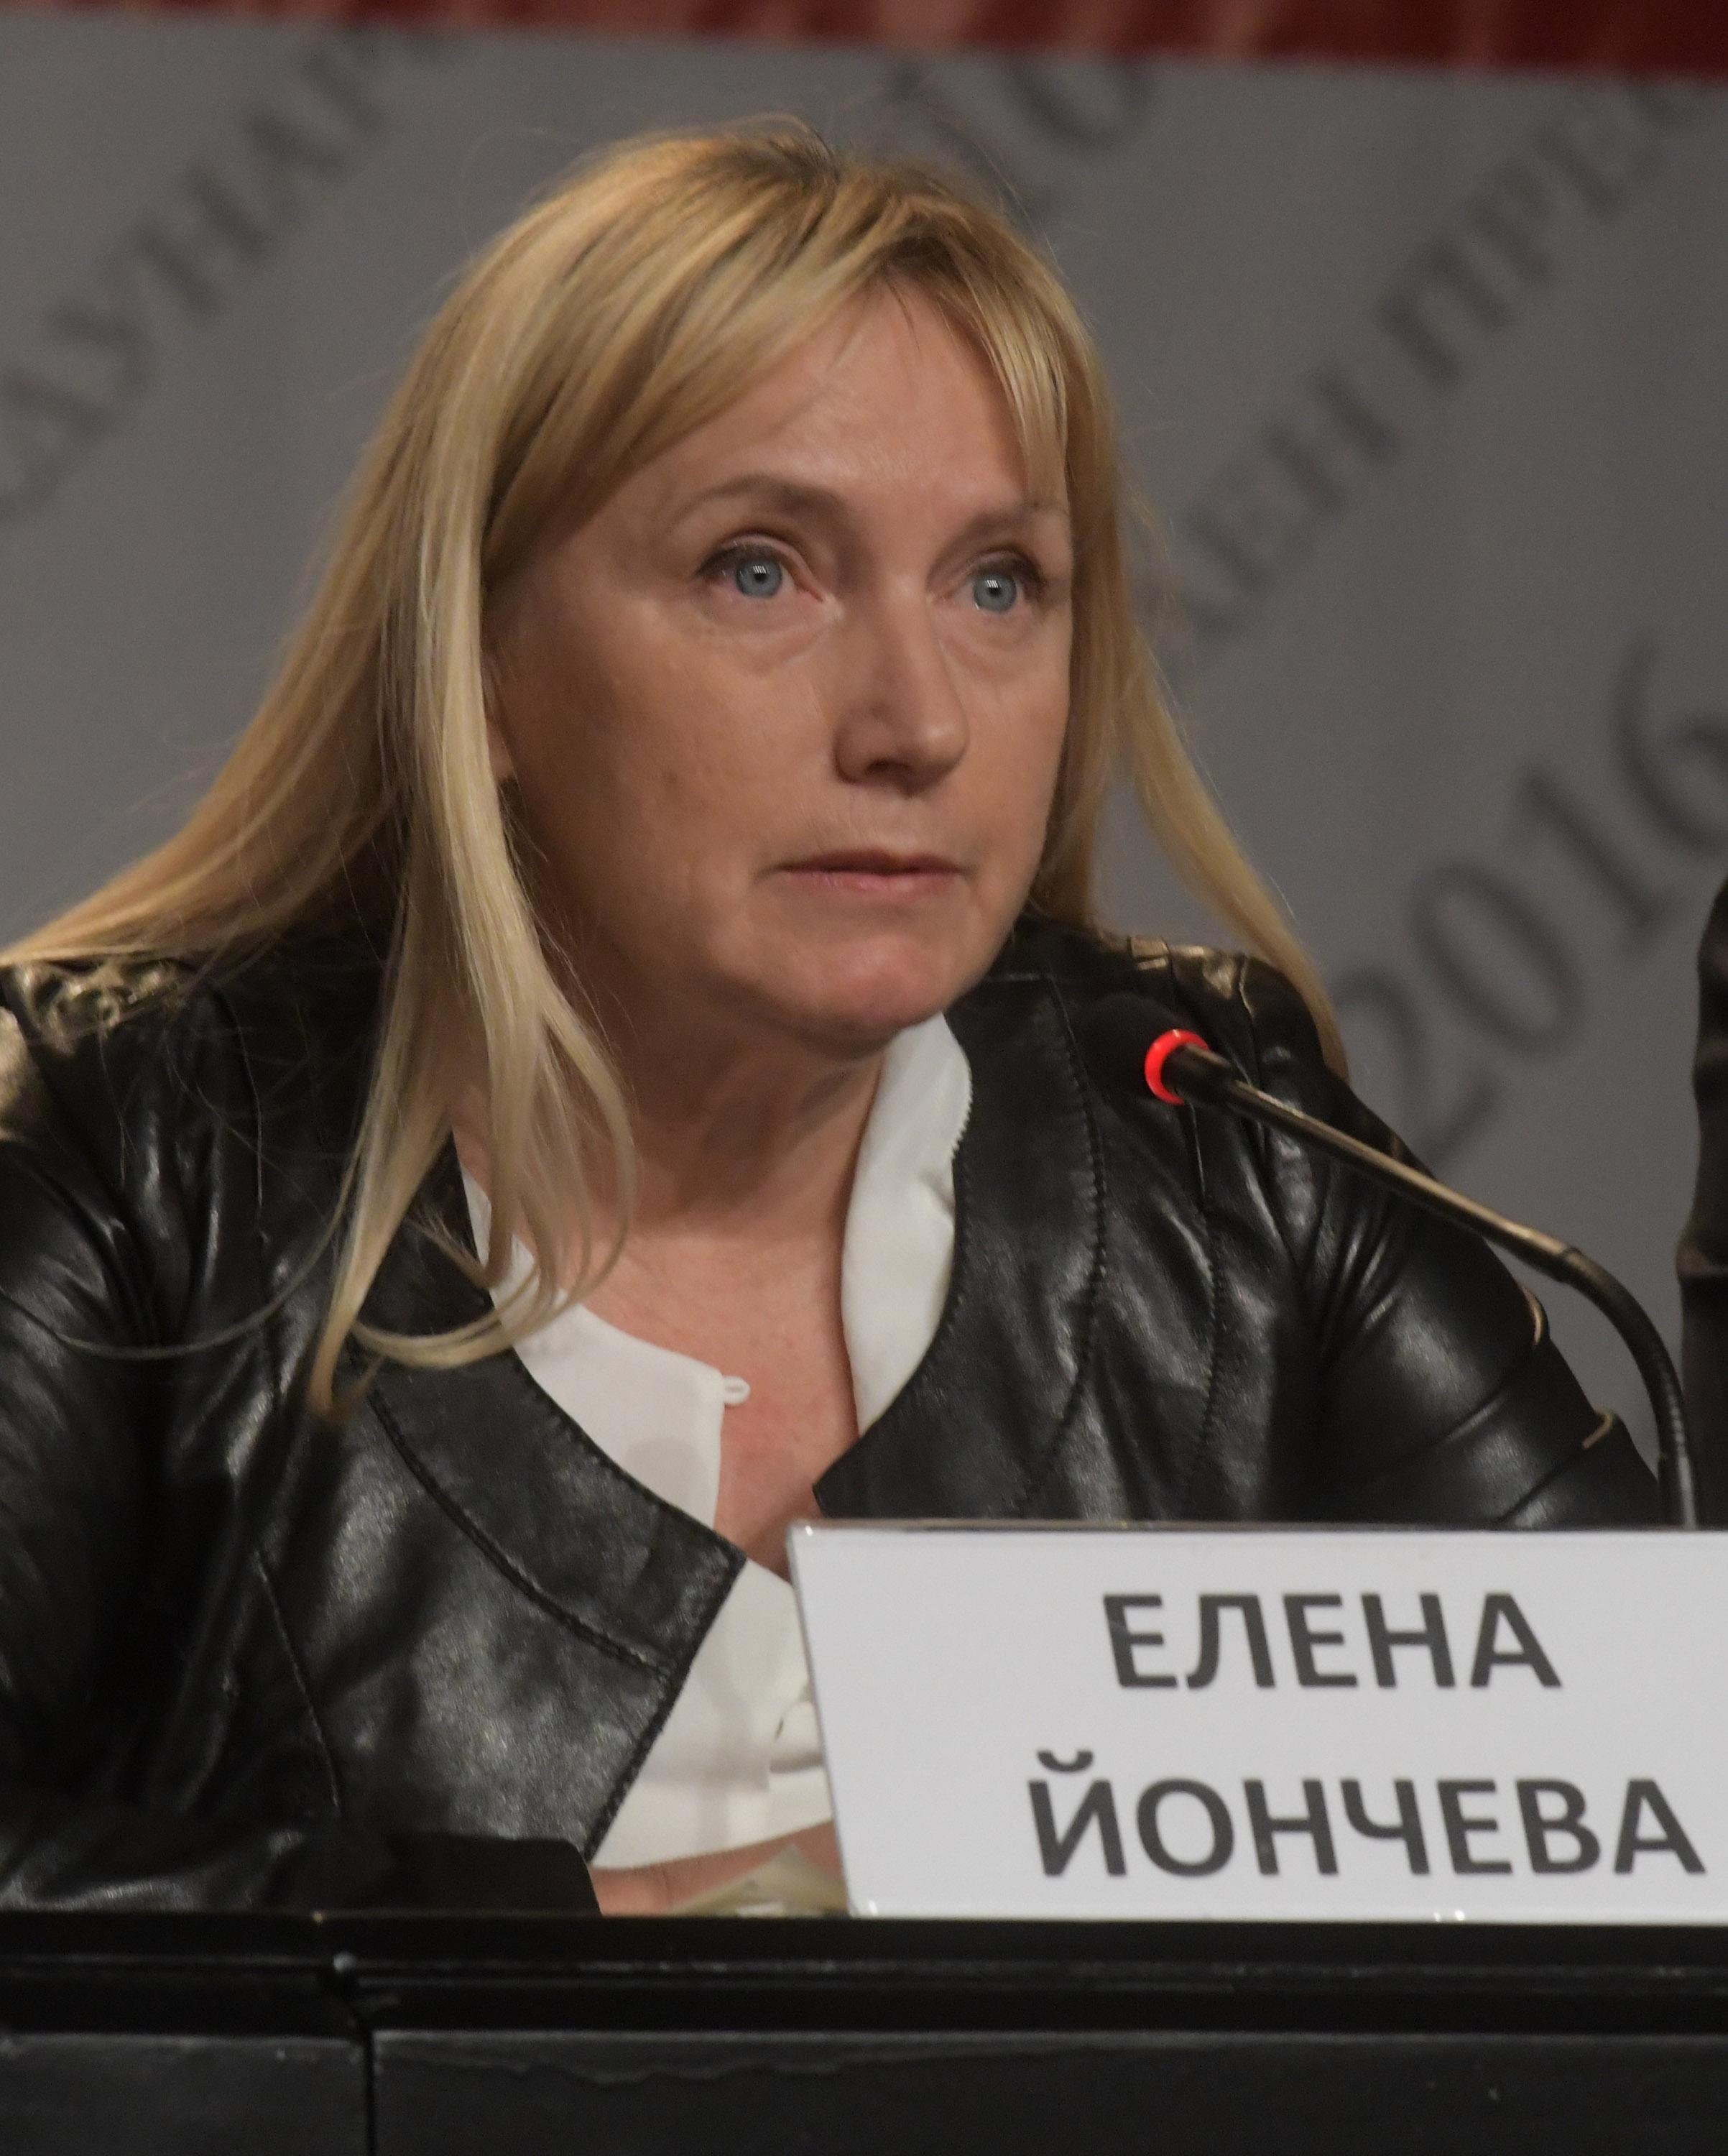 Народният представител от БСП Елена Йончева е проявила бдителност при залавяне на нелегални мигранти